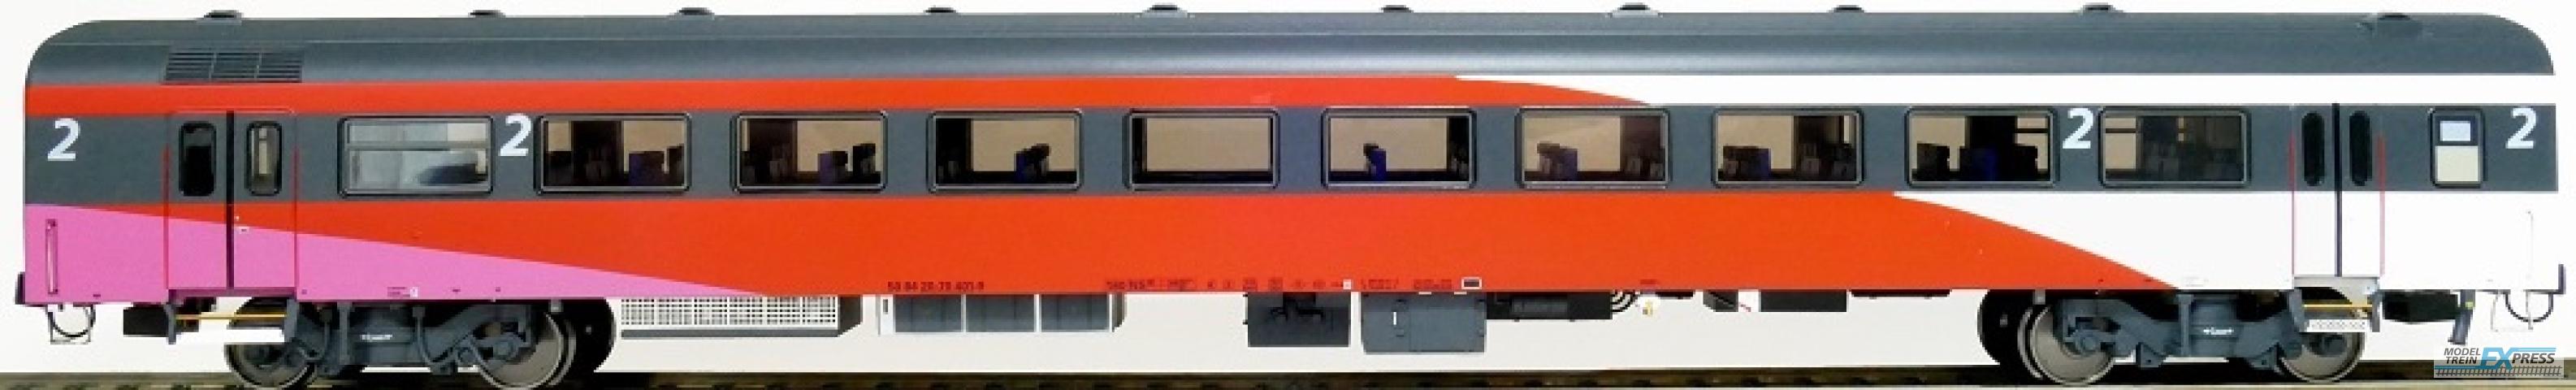 Exact-train 11190 NS ICRm Fyra 1 (Amsterdam - Brussel) für die Hsl-Strecke eingesetzt Endwagen B(Rose/Rot/Weiss) mit Beleuchtung und Figuren, Ep. VI